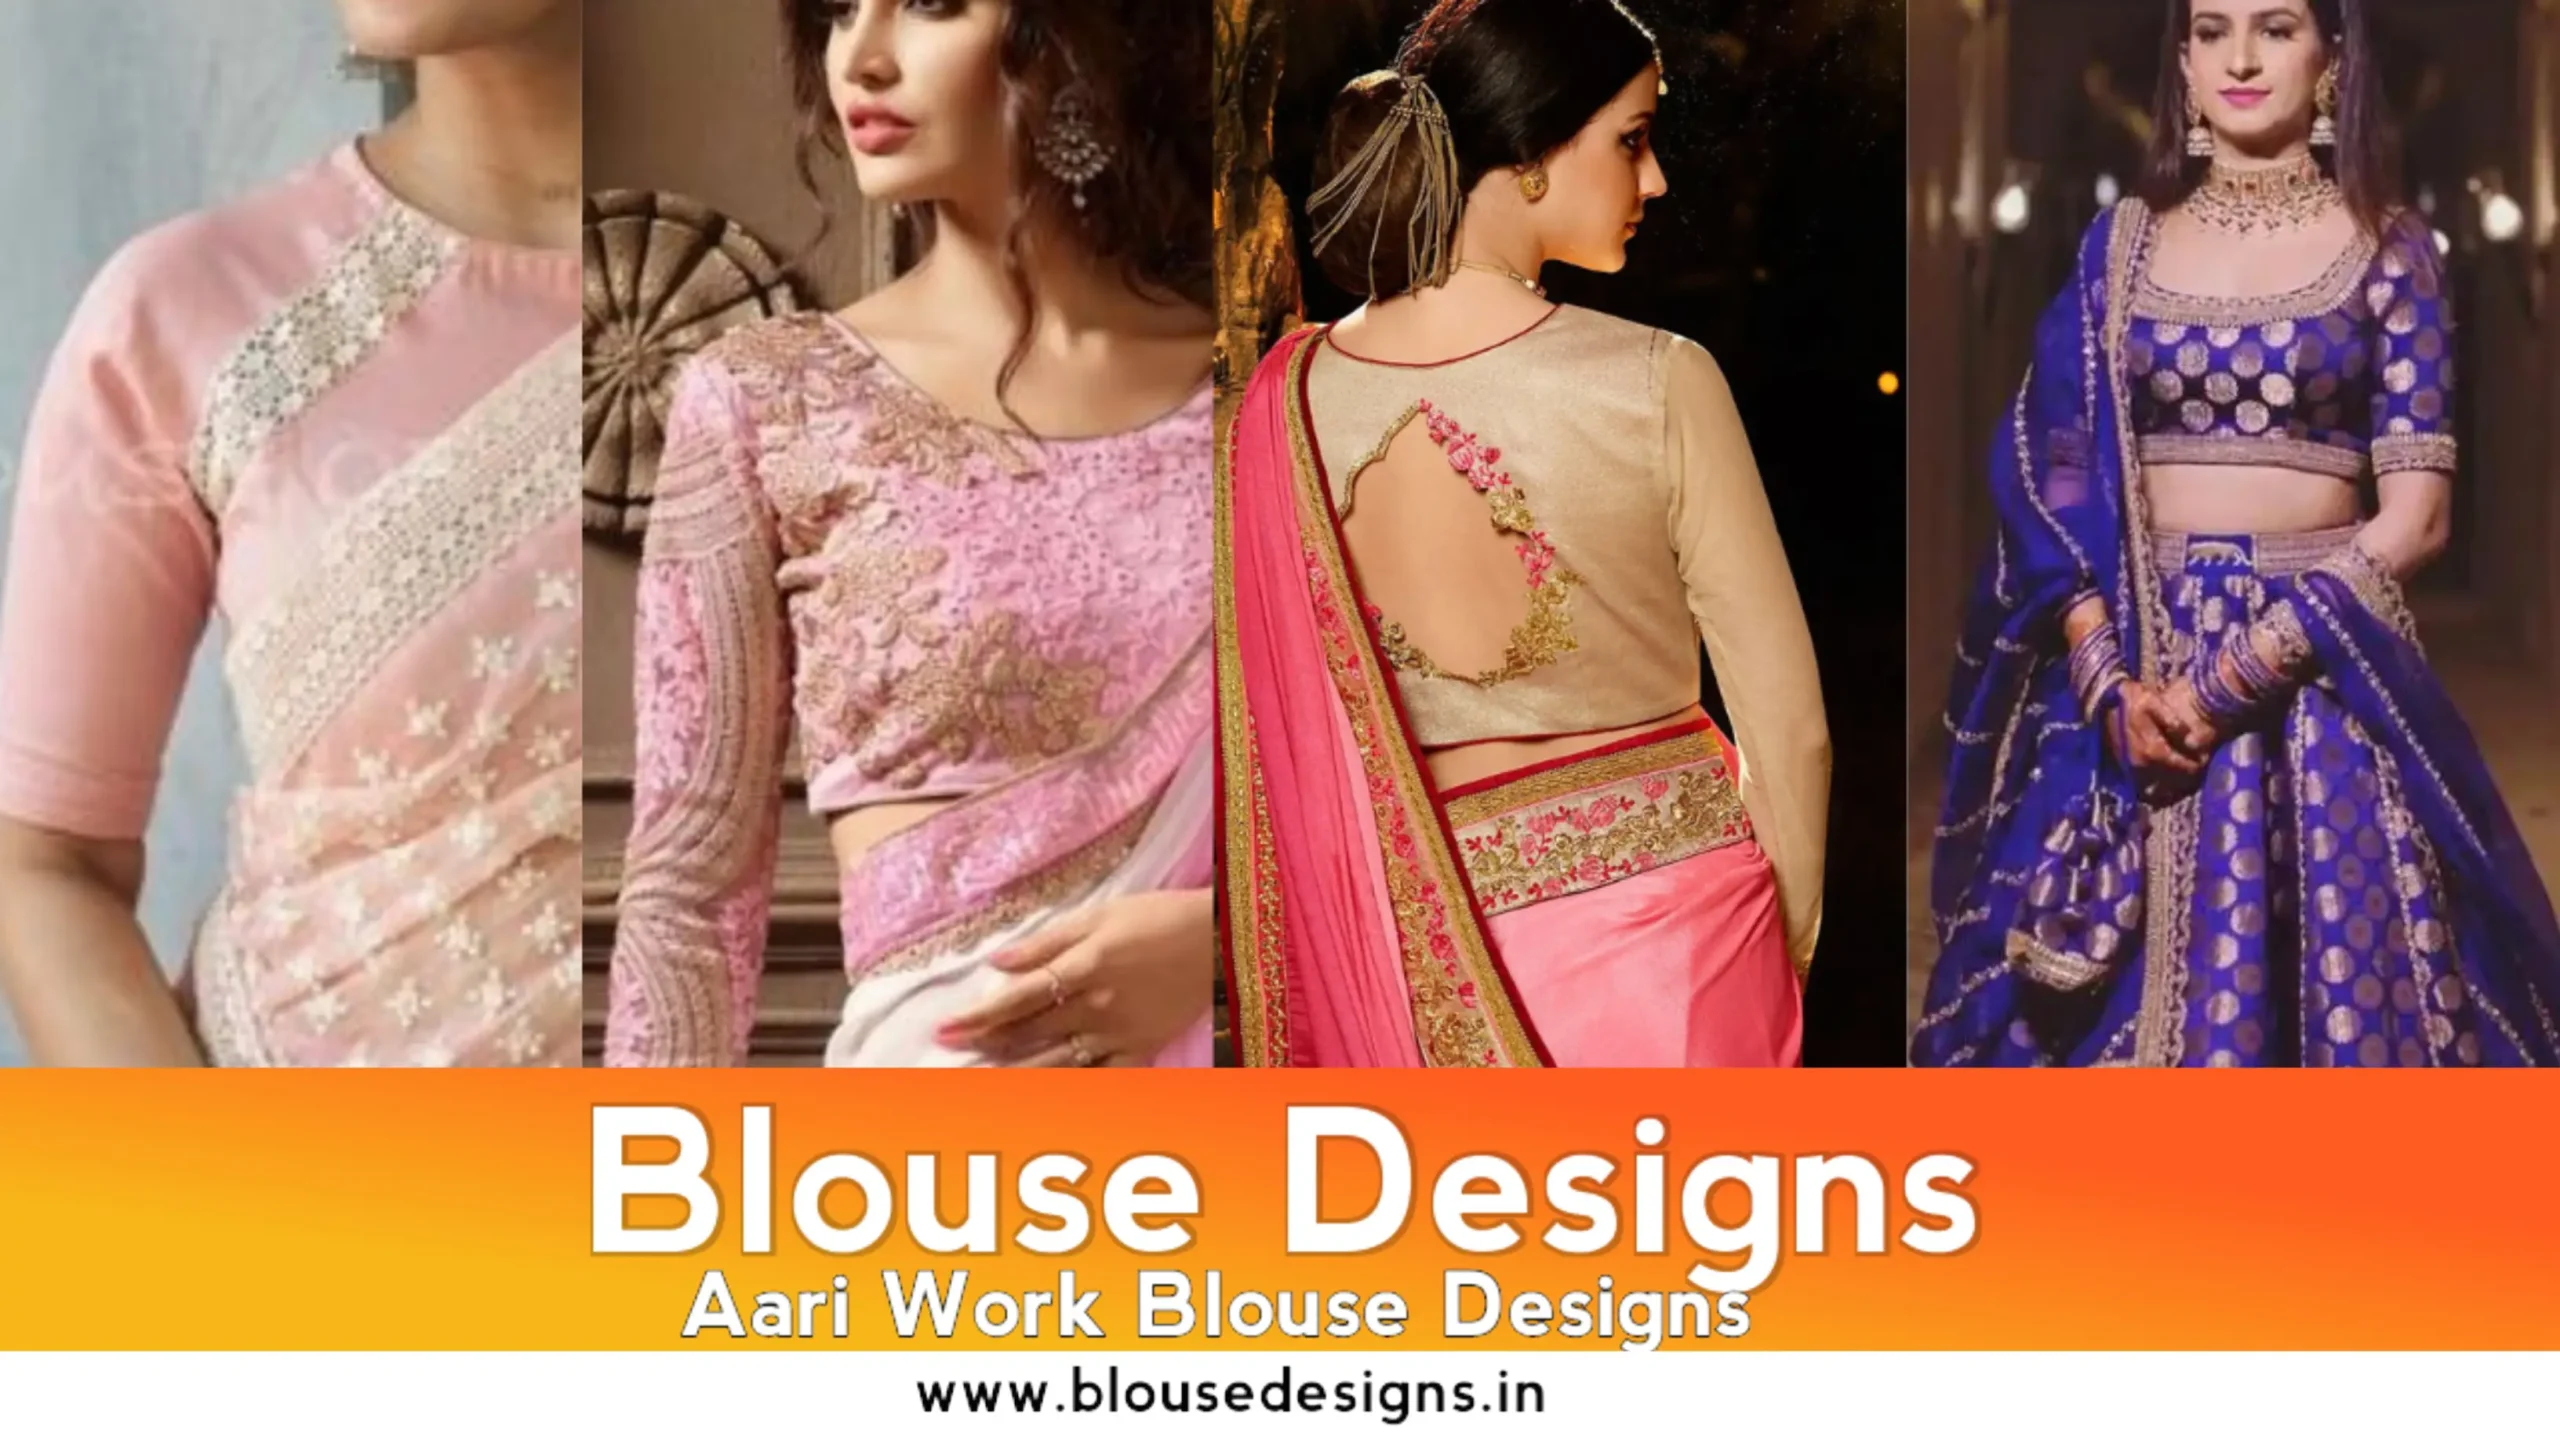 Aari work blouse designs